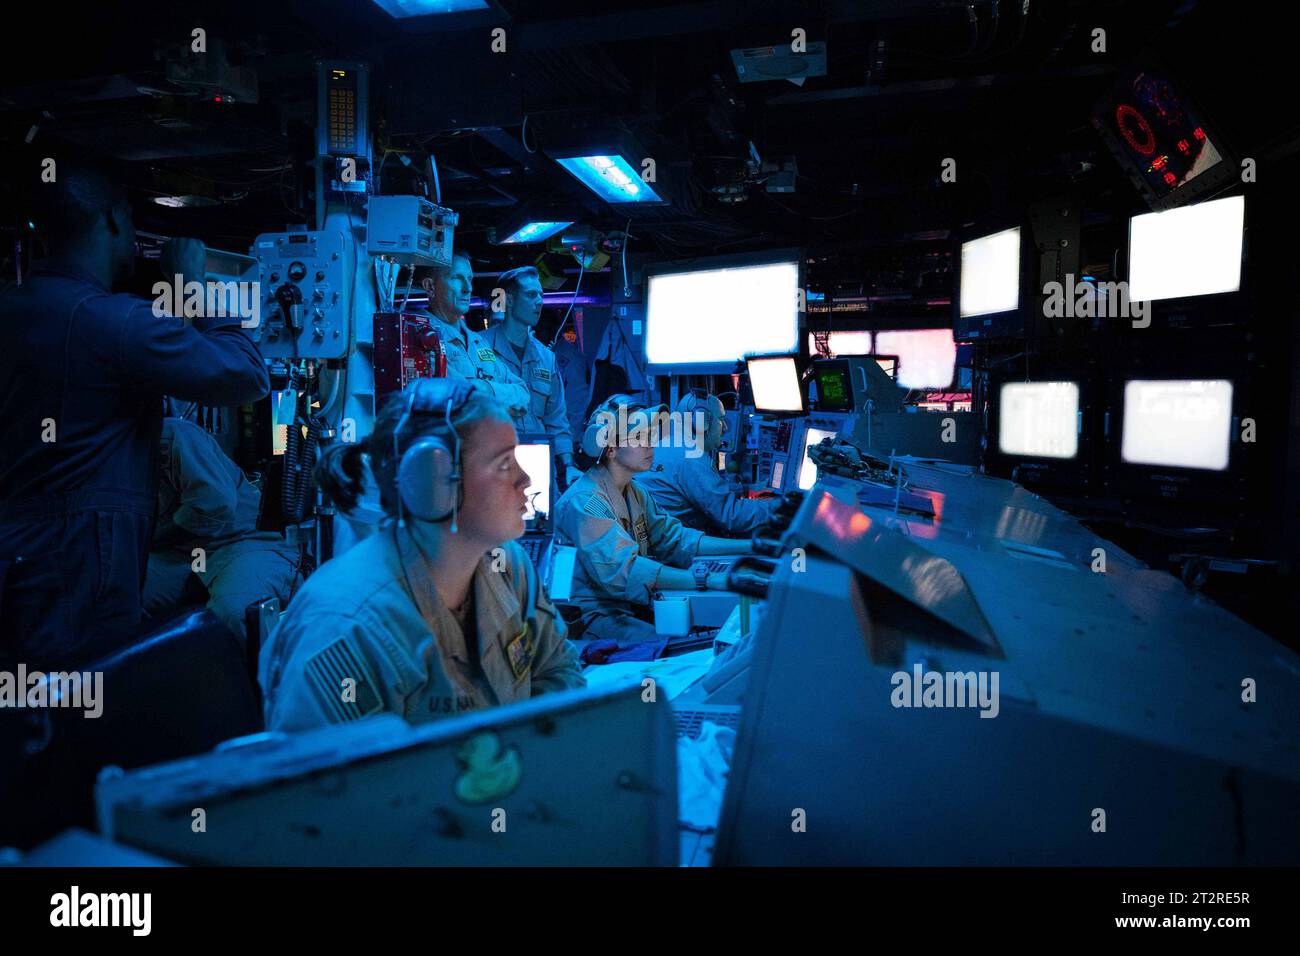 I marinai assegnati al cacciatorpediniere a missili guidati classe Arleigh Burke USS Carney (DDG 64) sono di guardia nel Combat Information Center della nave durante un'operazione per sconfiggere una combinazione di missili Houthi e veicoli aerei senza equipaggio nel Mar Rosso, il 19 ottobre 2023. Carney è dispiegato nell'area operativa della 5th Fleet degli Stati Uniti per contribuire a garantire la sicurezza marittima e la stabilità nella regione del Medio Oriente. Foto di MC2 Aaron Lau/U.S. Navy/UPI Credit: UPI/Alamy Live News Foto Stock